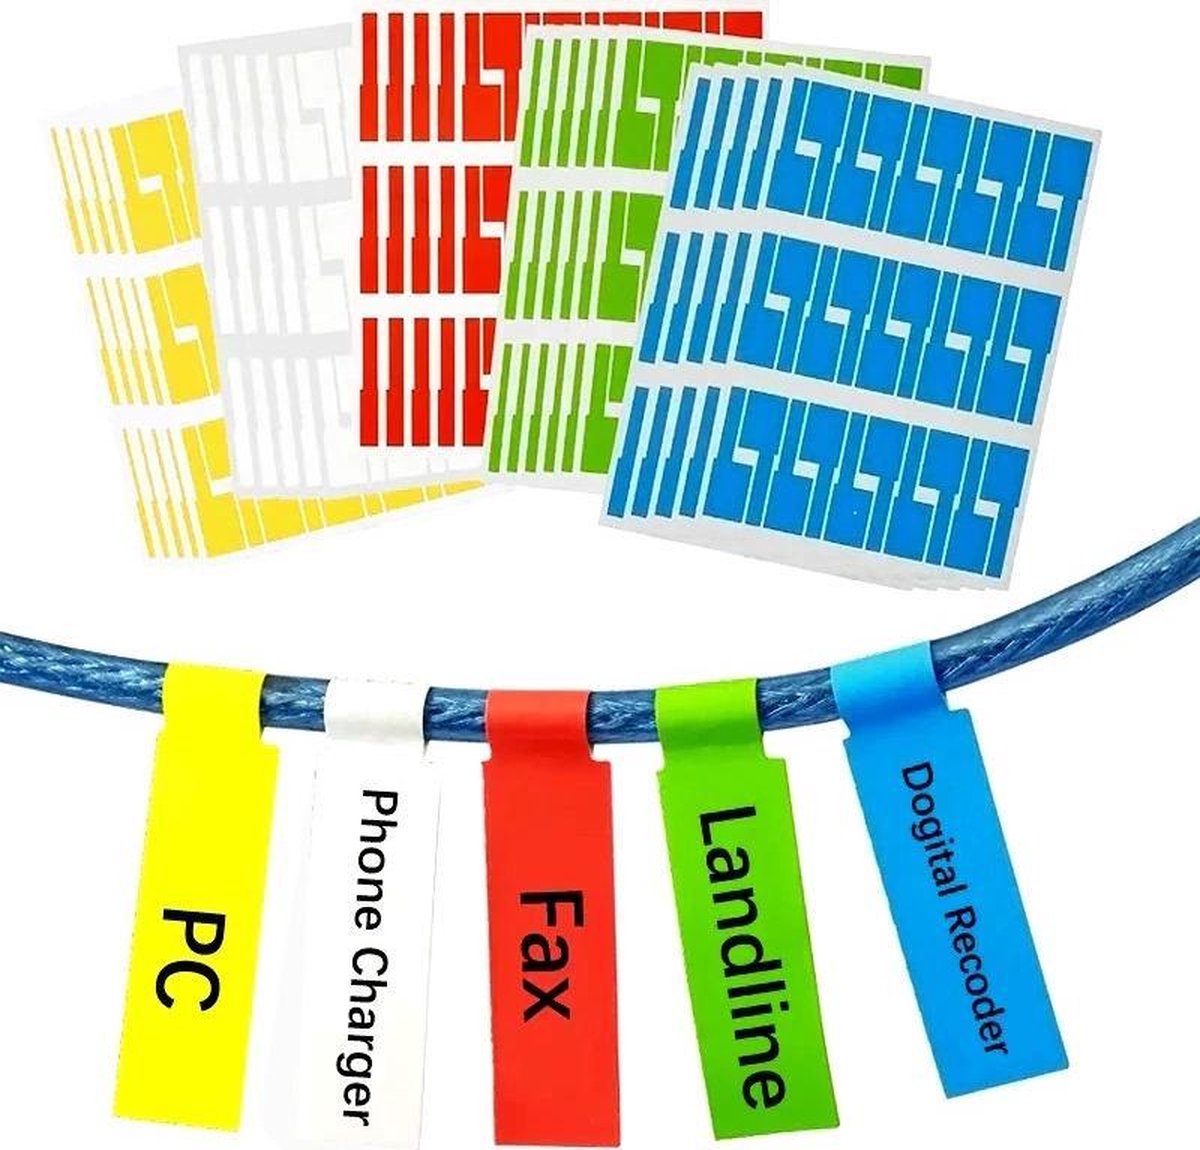 150 netwerk / telefoonkabels labels (stickers) in 5 kleuren op A4